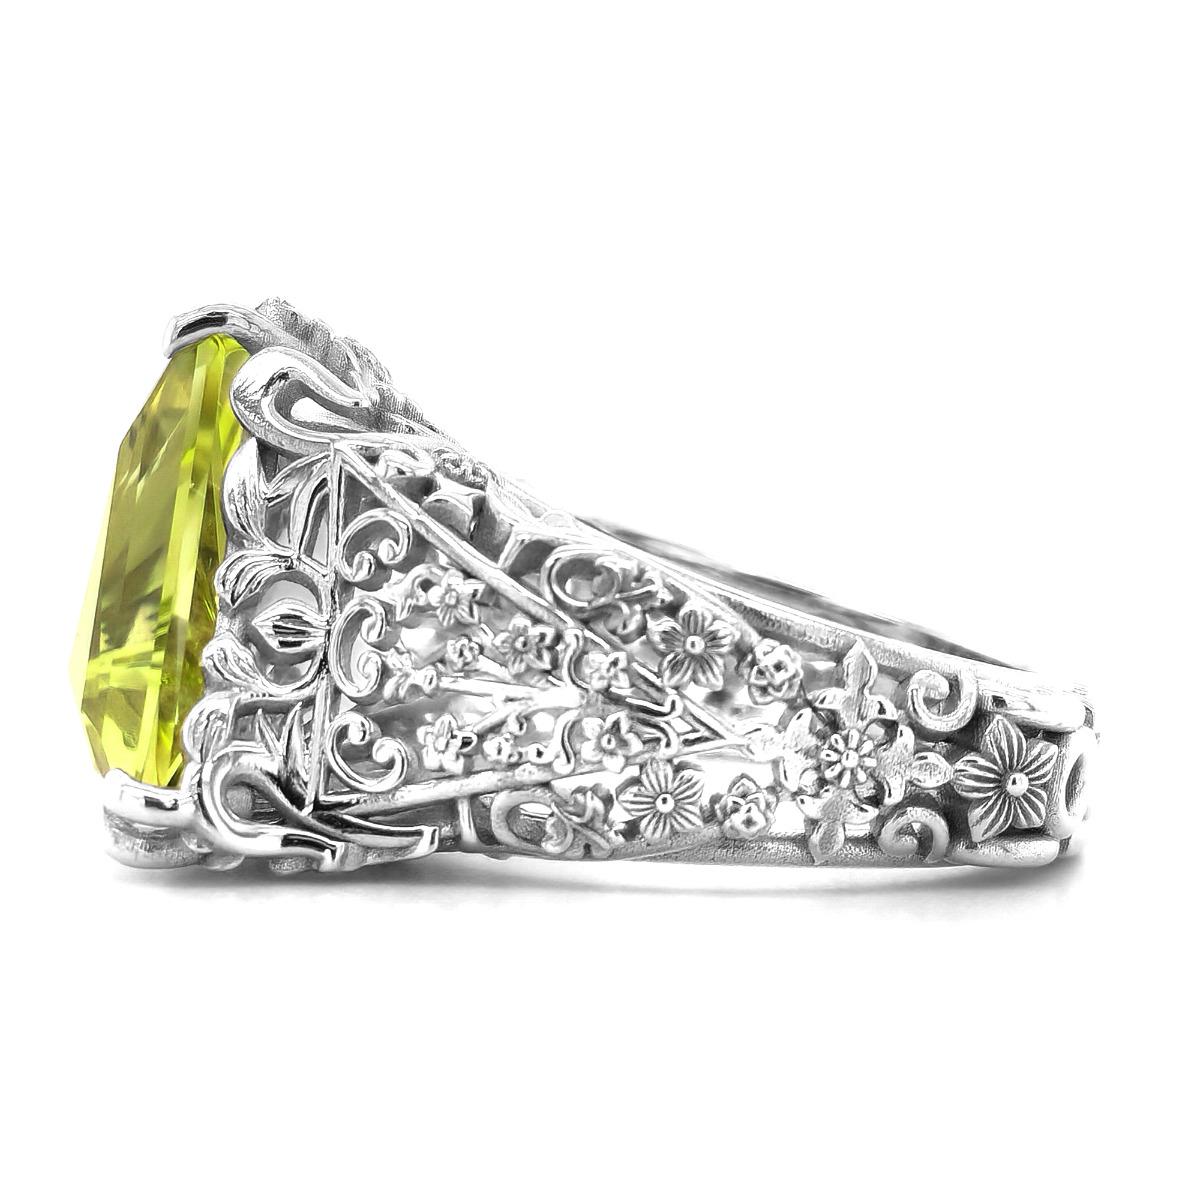 Eingefasst in 18 Karat Weißgold ist dieser warme und doch glänzende grünlich gelbe Beryll ein Edelstein, den sie lieben wird. Ein gut geschliffener Edelstein, dessen Majestät sie vor Farbe erröten lassen wird. Mit seiner dreieckigen Form, einem